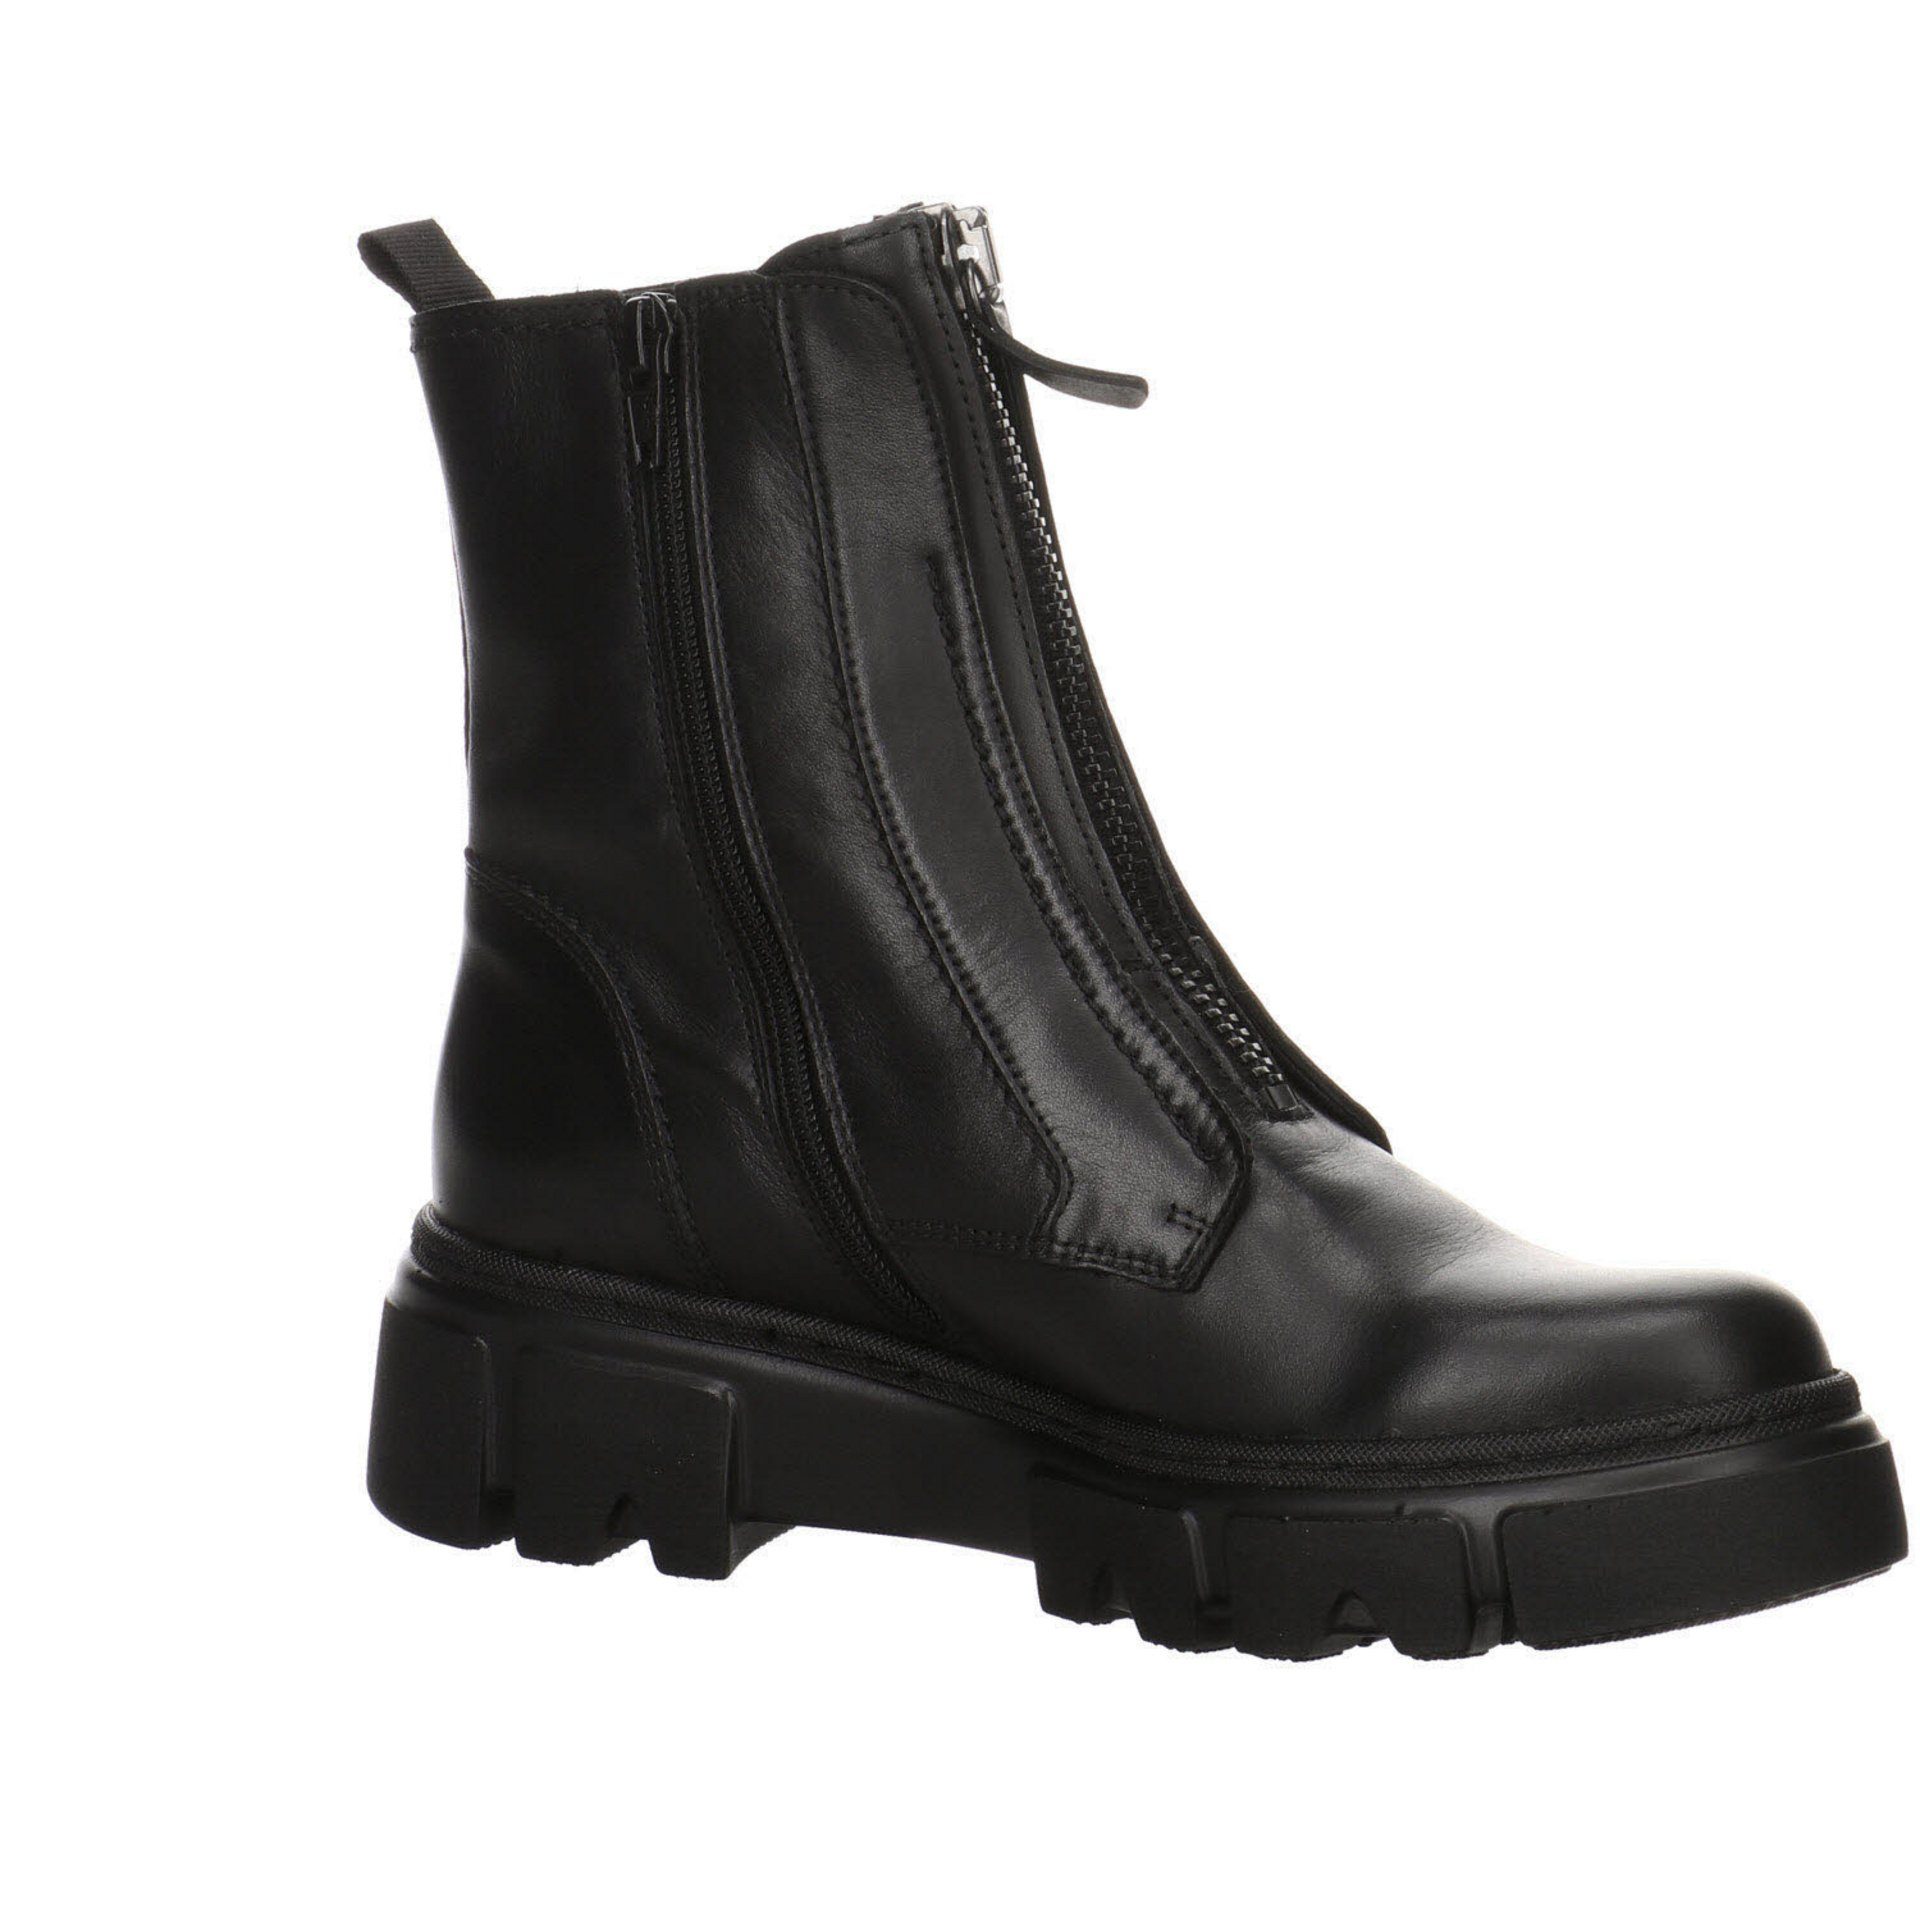 Schuhe schwarz(altsilber) Boots Elegant Glattleder Damen Stiefeletten Gabor Freizeit Stiefelette